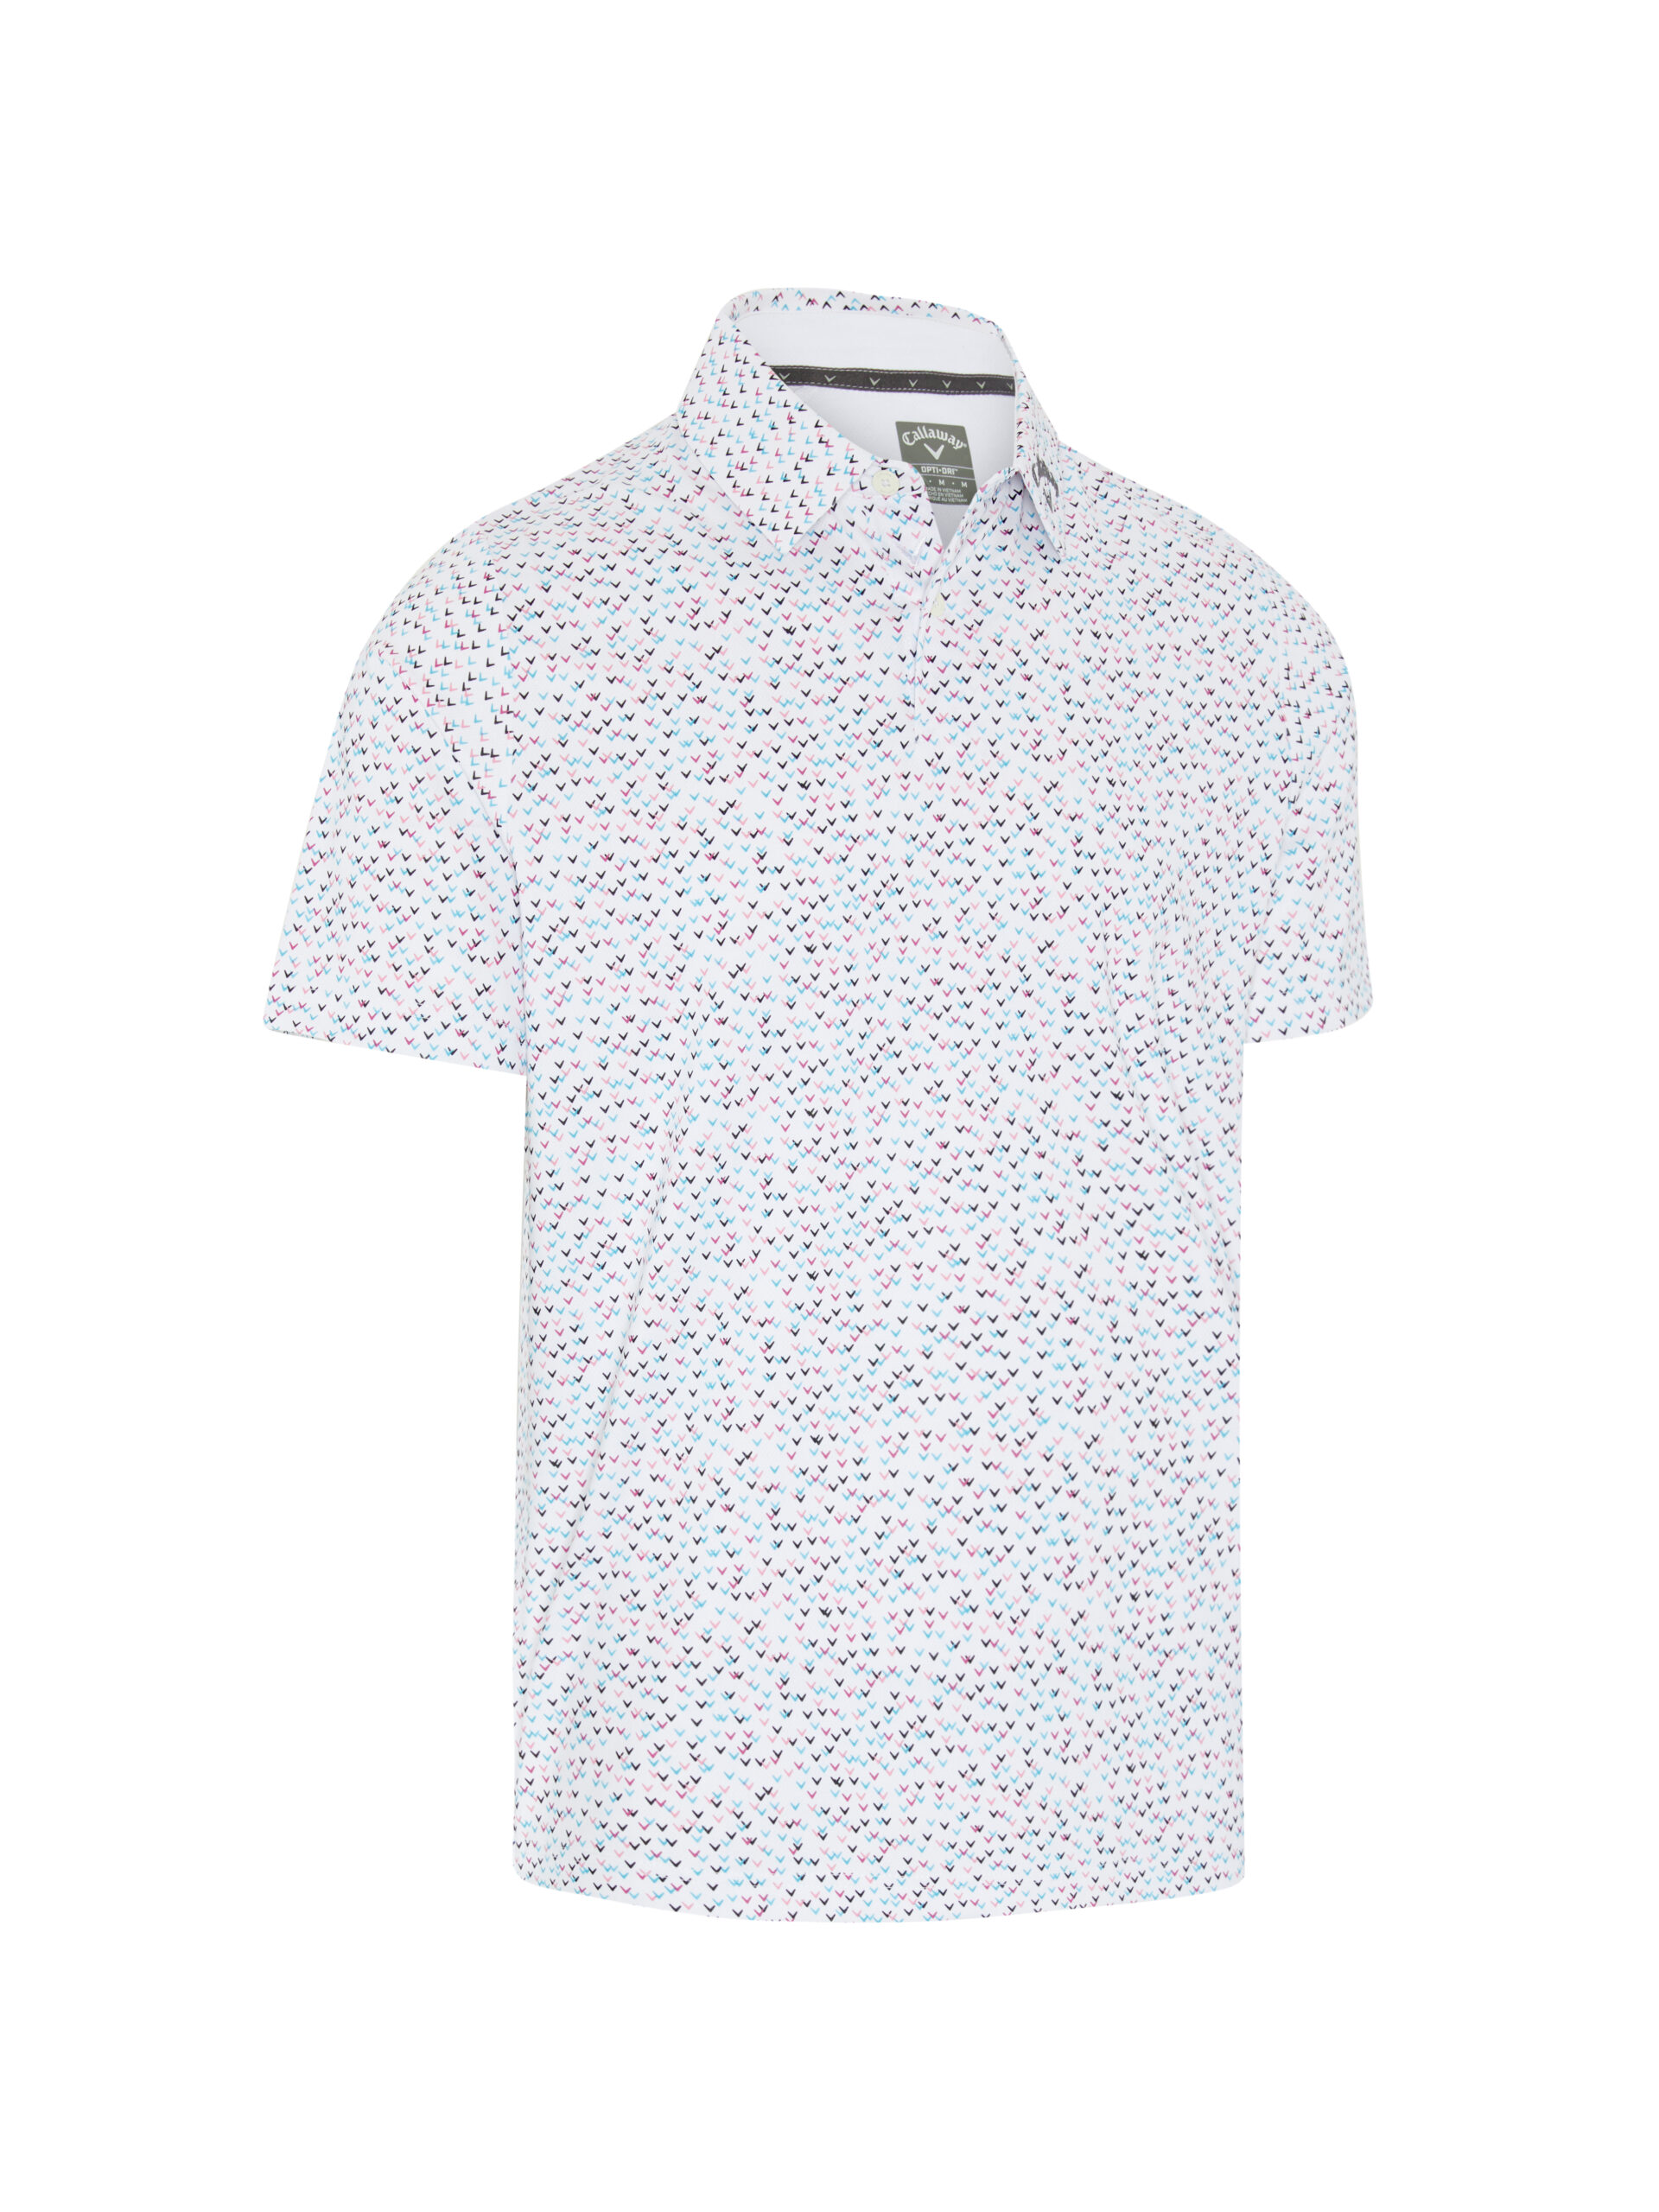 Callaway All-Over Chev Confetti Print pánské golfové triko, bílé, vel. XL